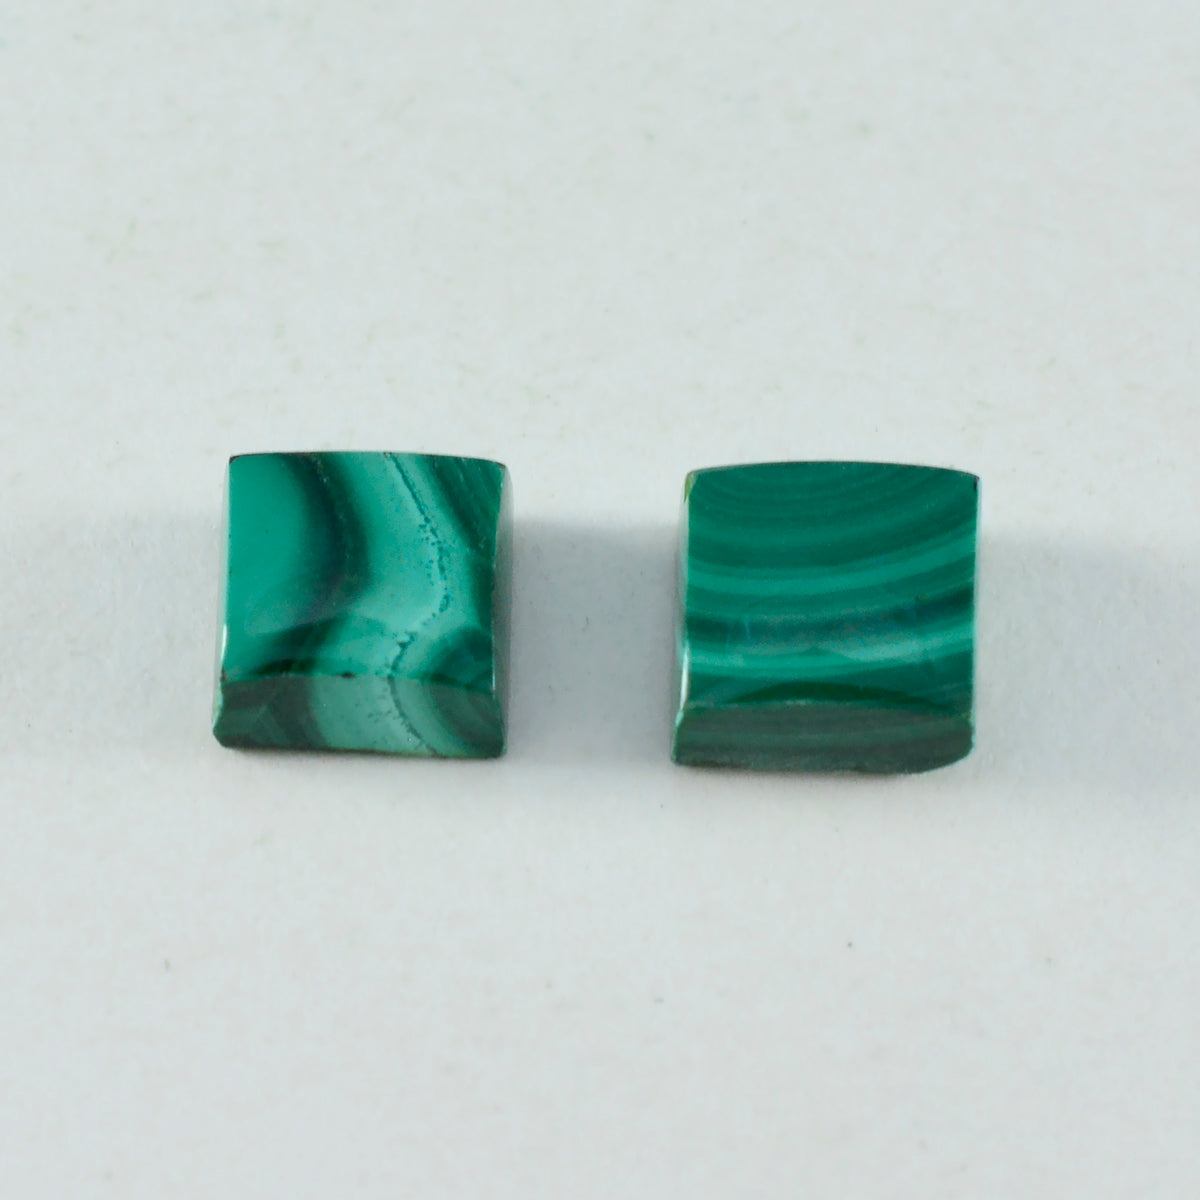 Riyogems 1 Stück grüner Malachit-Cabochon, 15 x 15 mm, quadratische Form, hochwertige Edelsteine